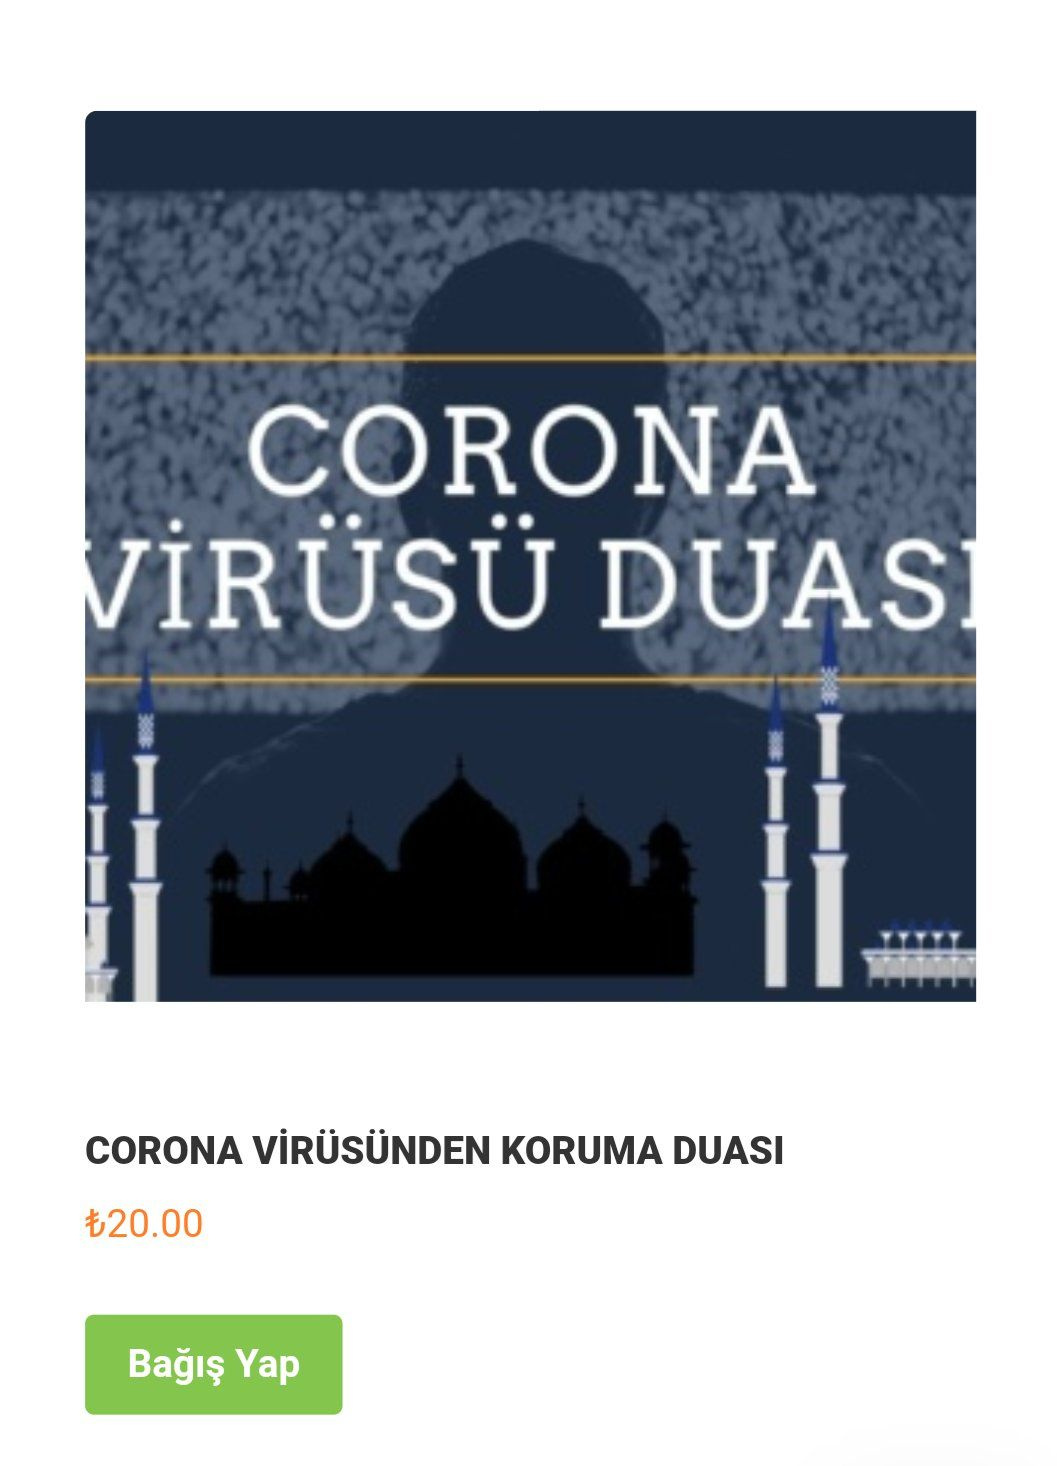 20 liraya koronavirüs duası satılıyor din bezirganlığında sınır yok